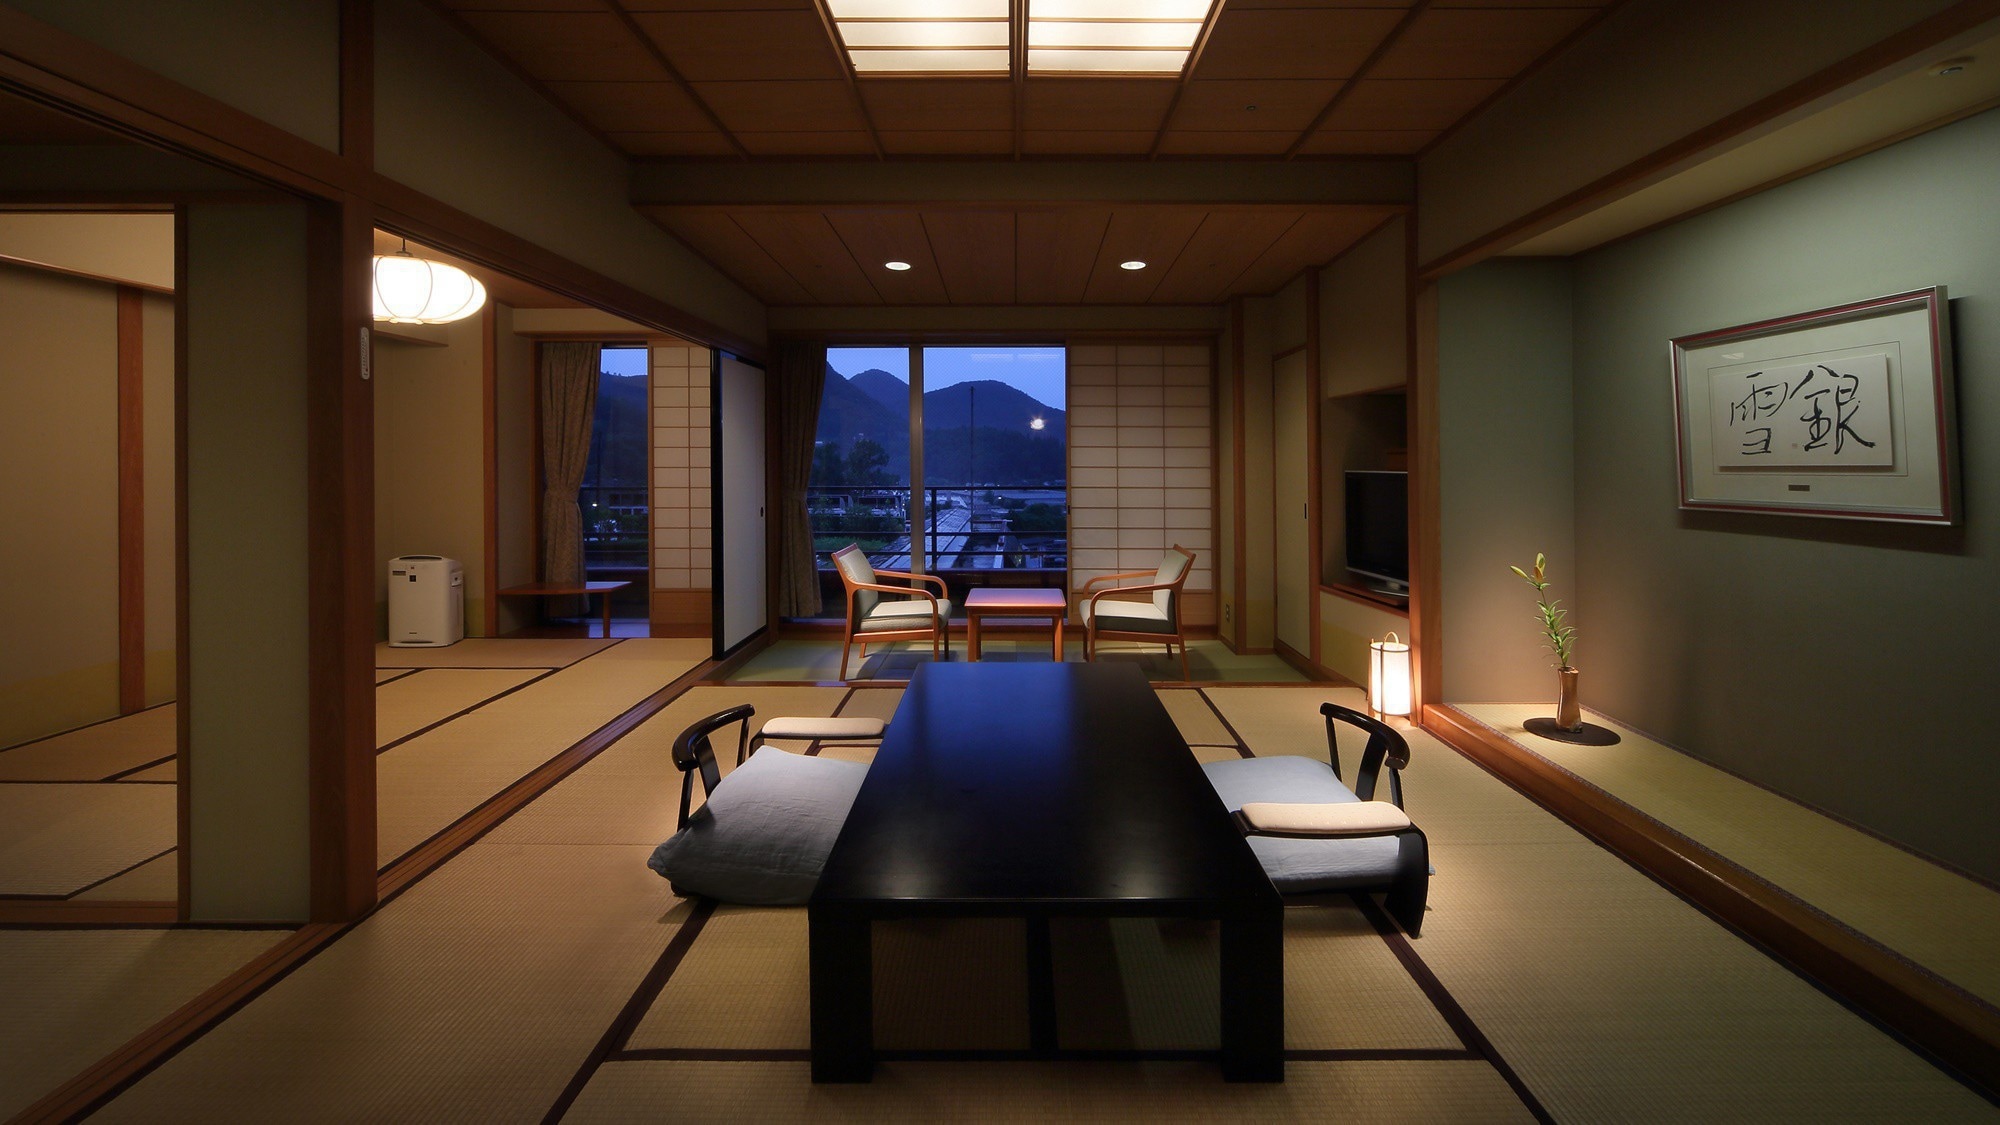 【日式房间10张榻榻米+6张榻榻米】10张榻榻米的日式房间和6张榻榻米的宽敞隔壁房间。与家人和朋友一起放松。